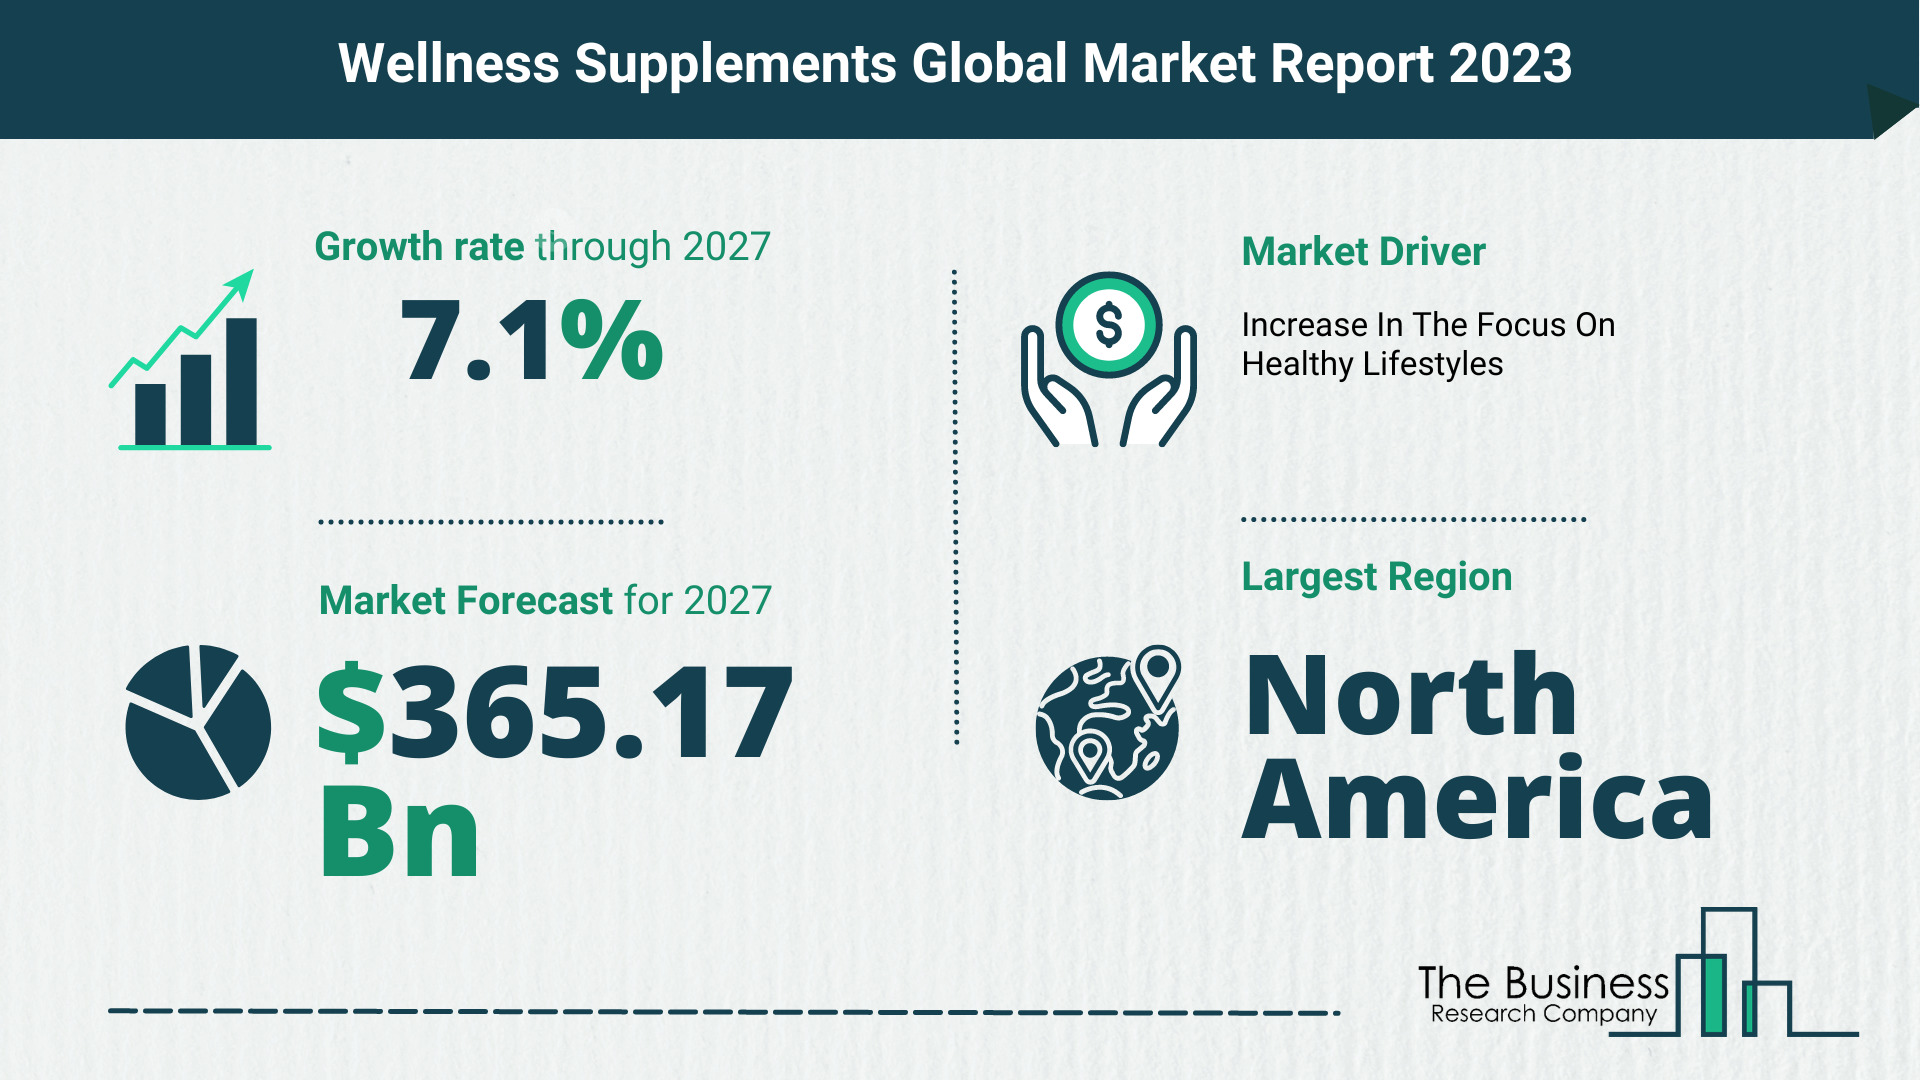 Global Wellness Supplements Market